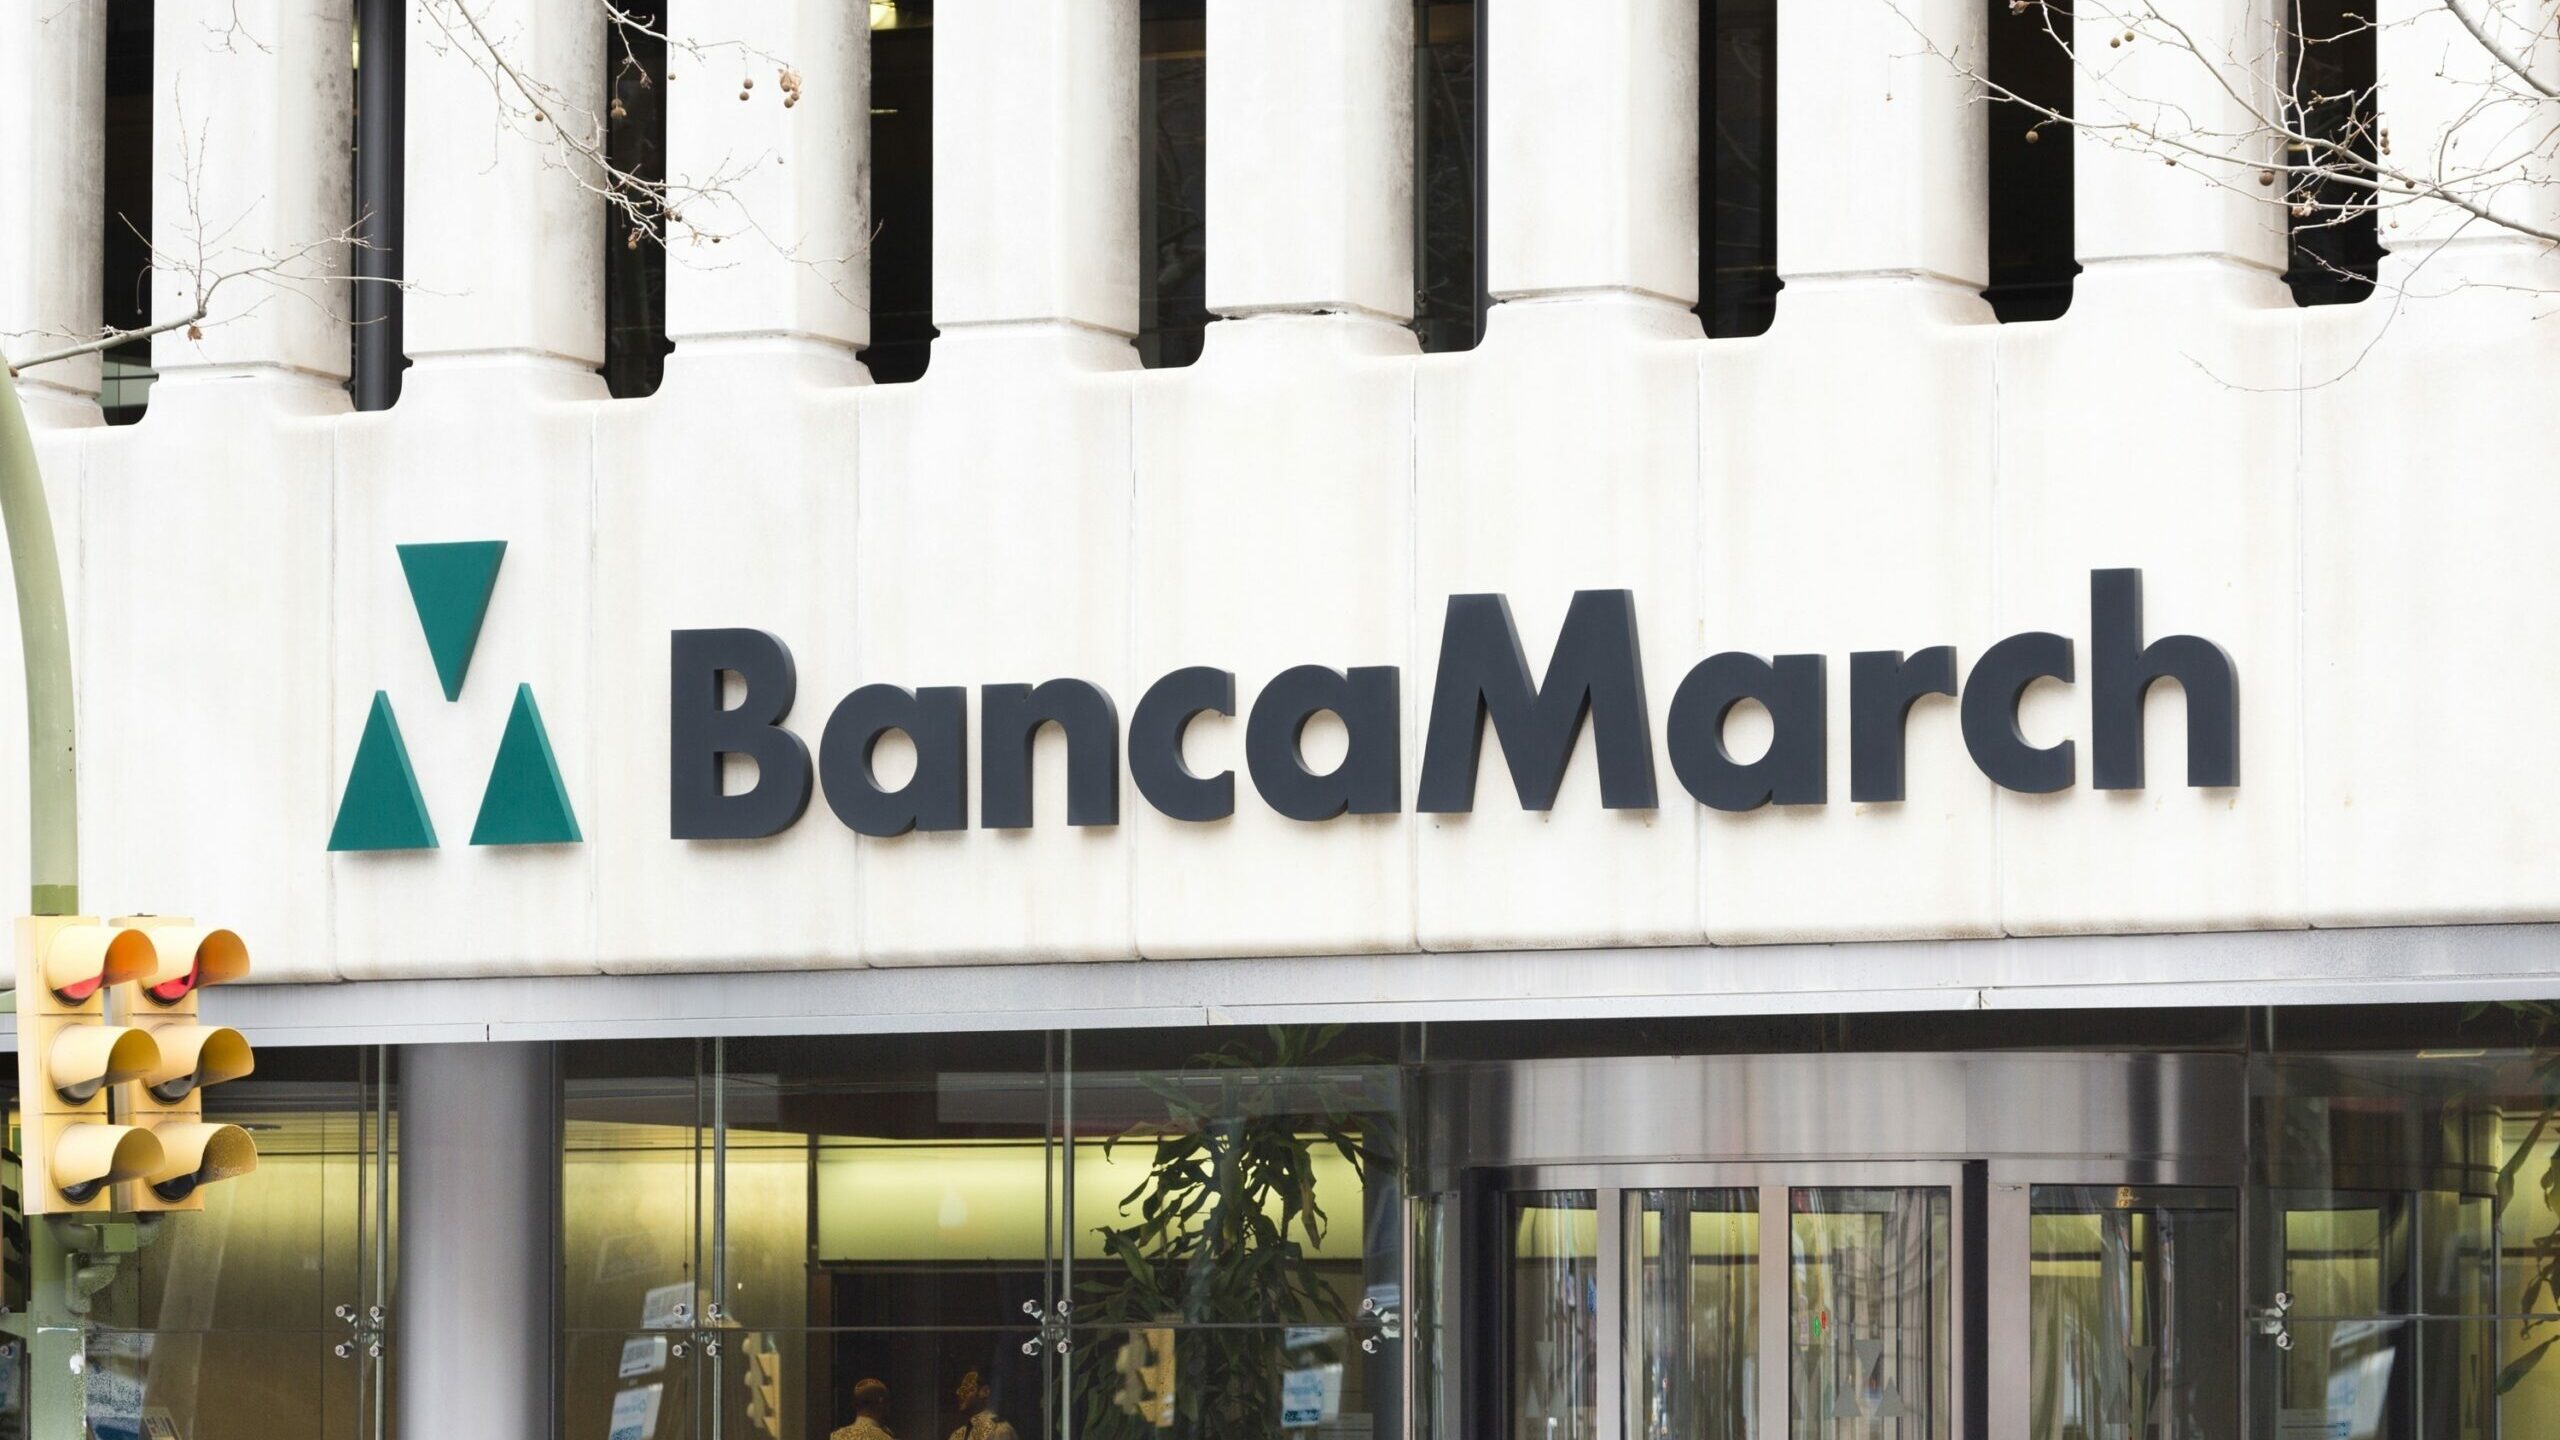 Banca March cerrará cinco oficinas en Baleares en junio y los profesionales serán reubicados